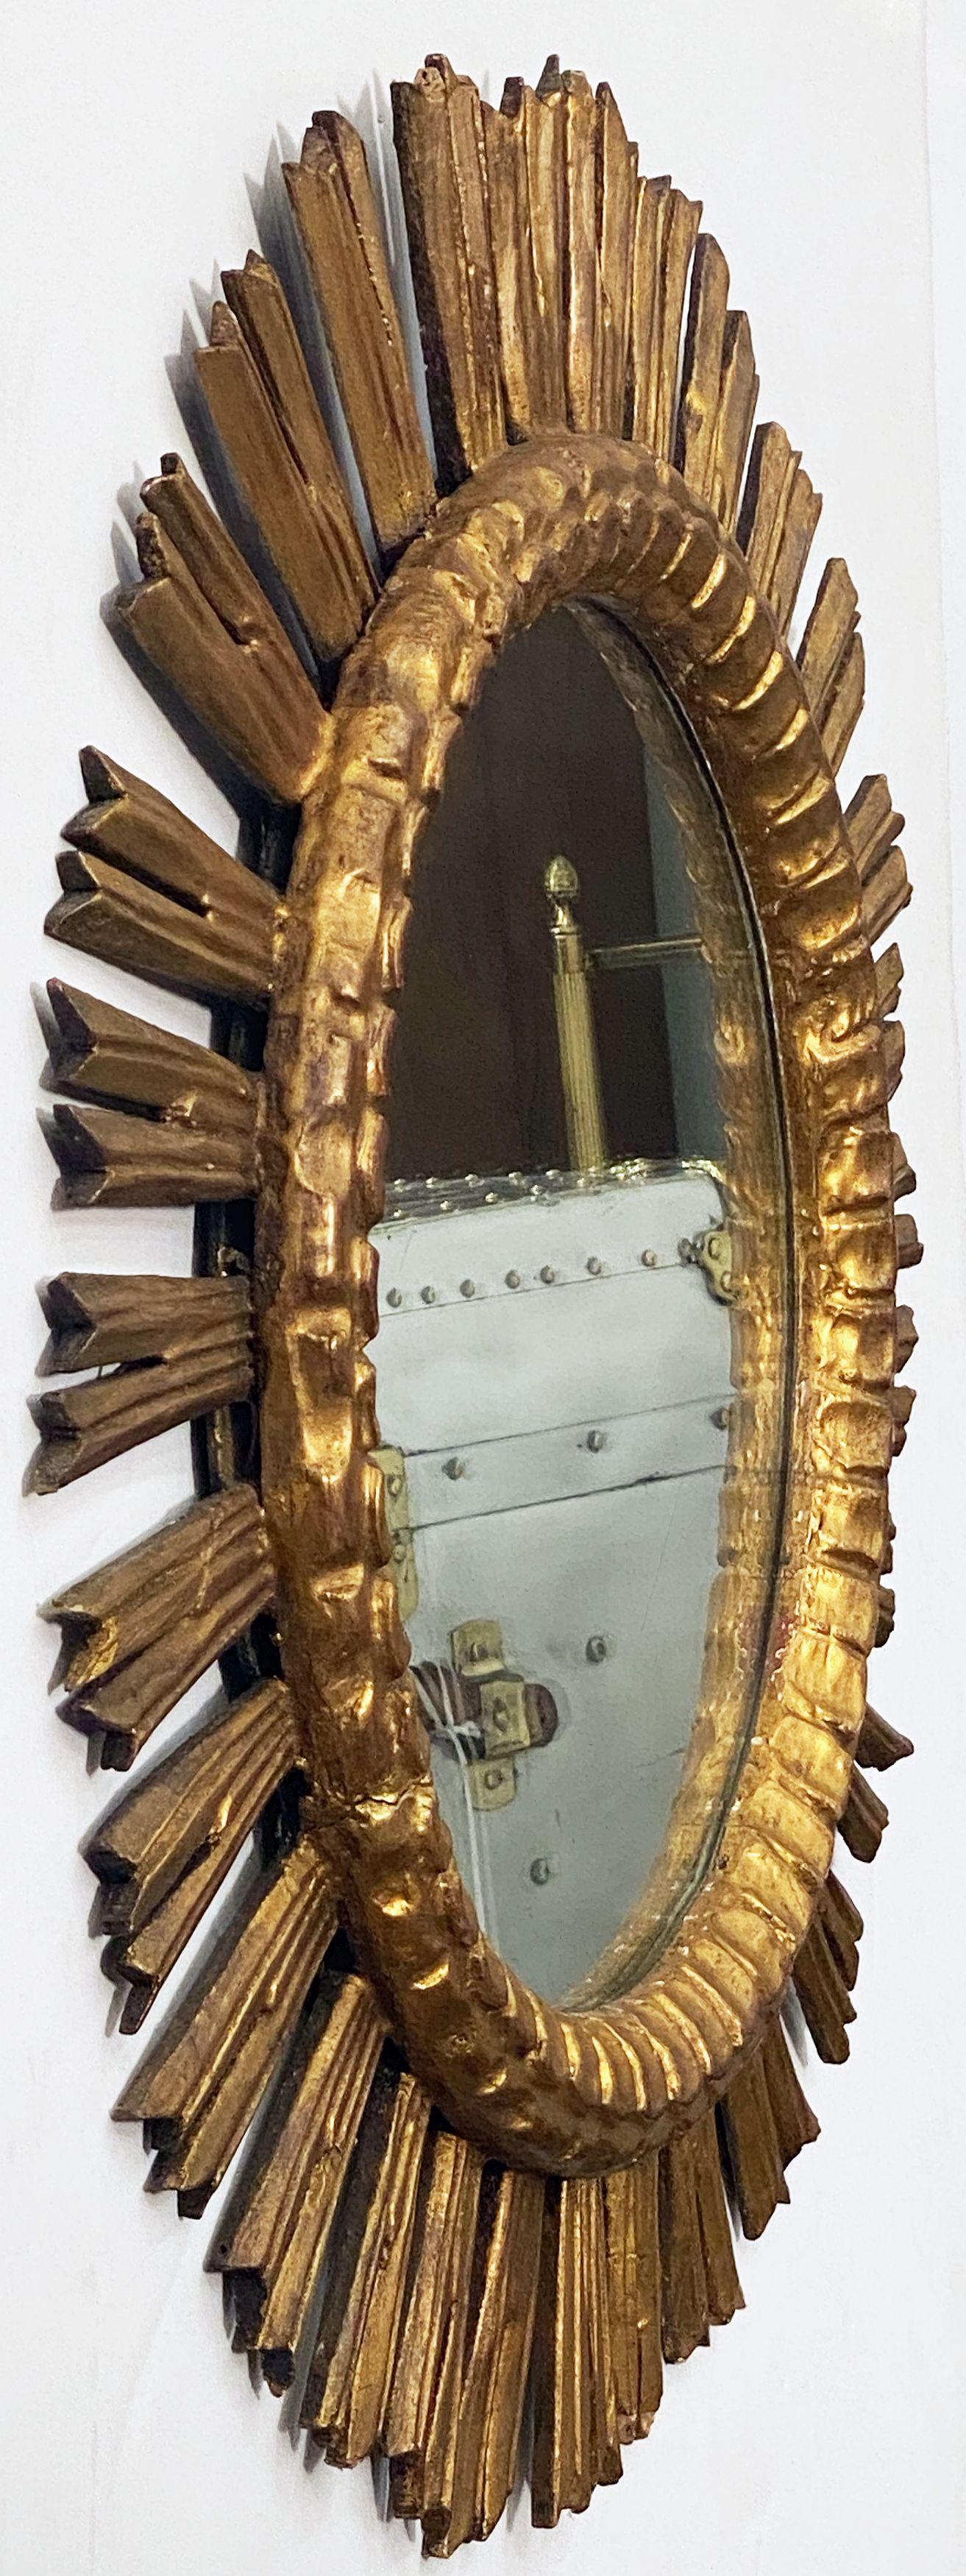 Ein schöner großer französischer vergoldeter Sunburst (oder Starburst) Spiegel mit rundem Spiegelglas in einem geformten Rahmen.

Durchmesser von 25 Zoll.